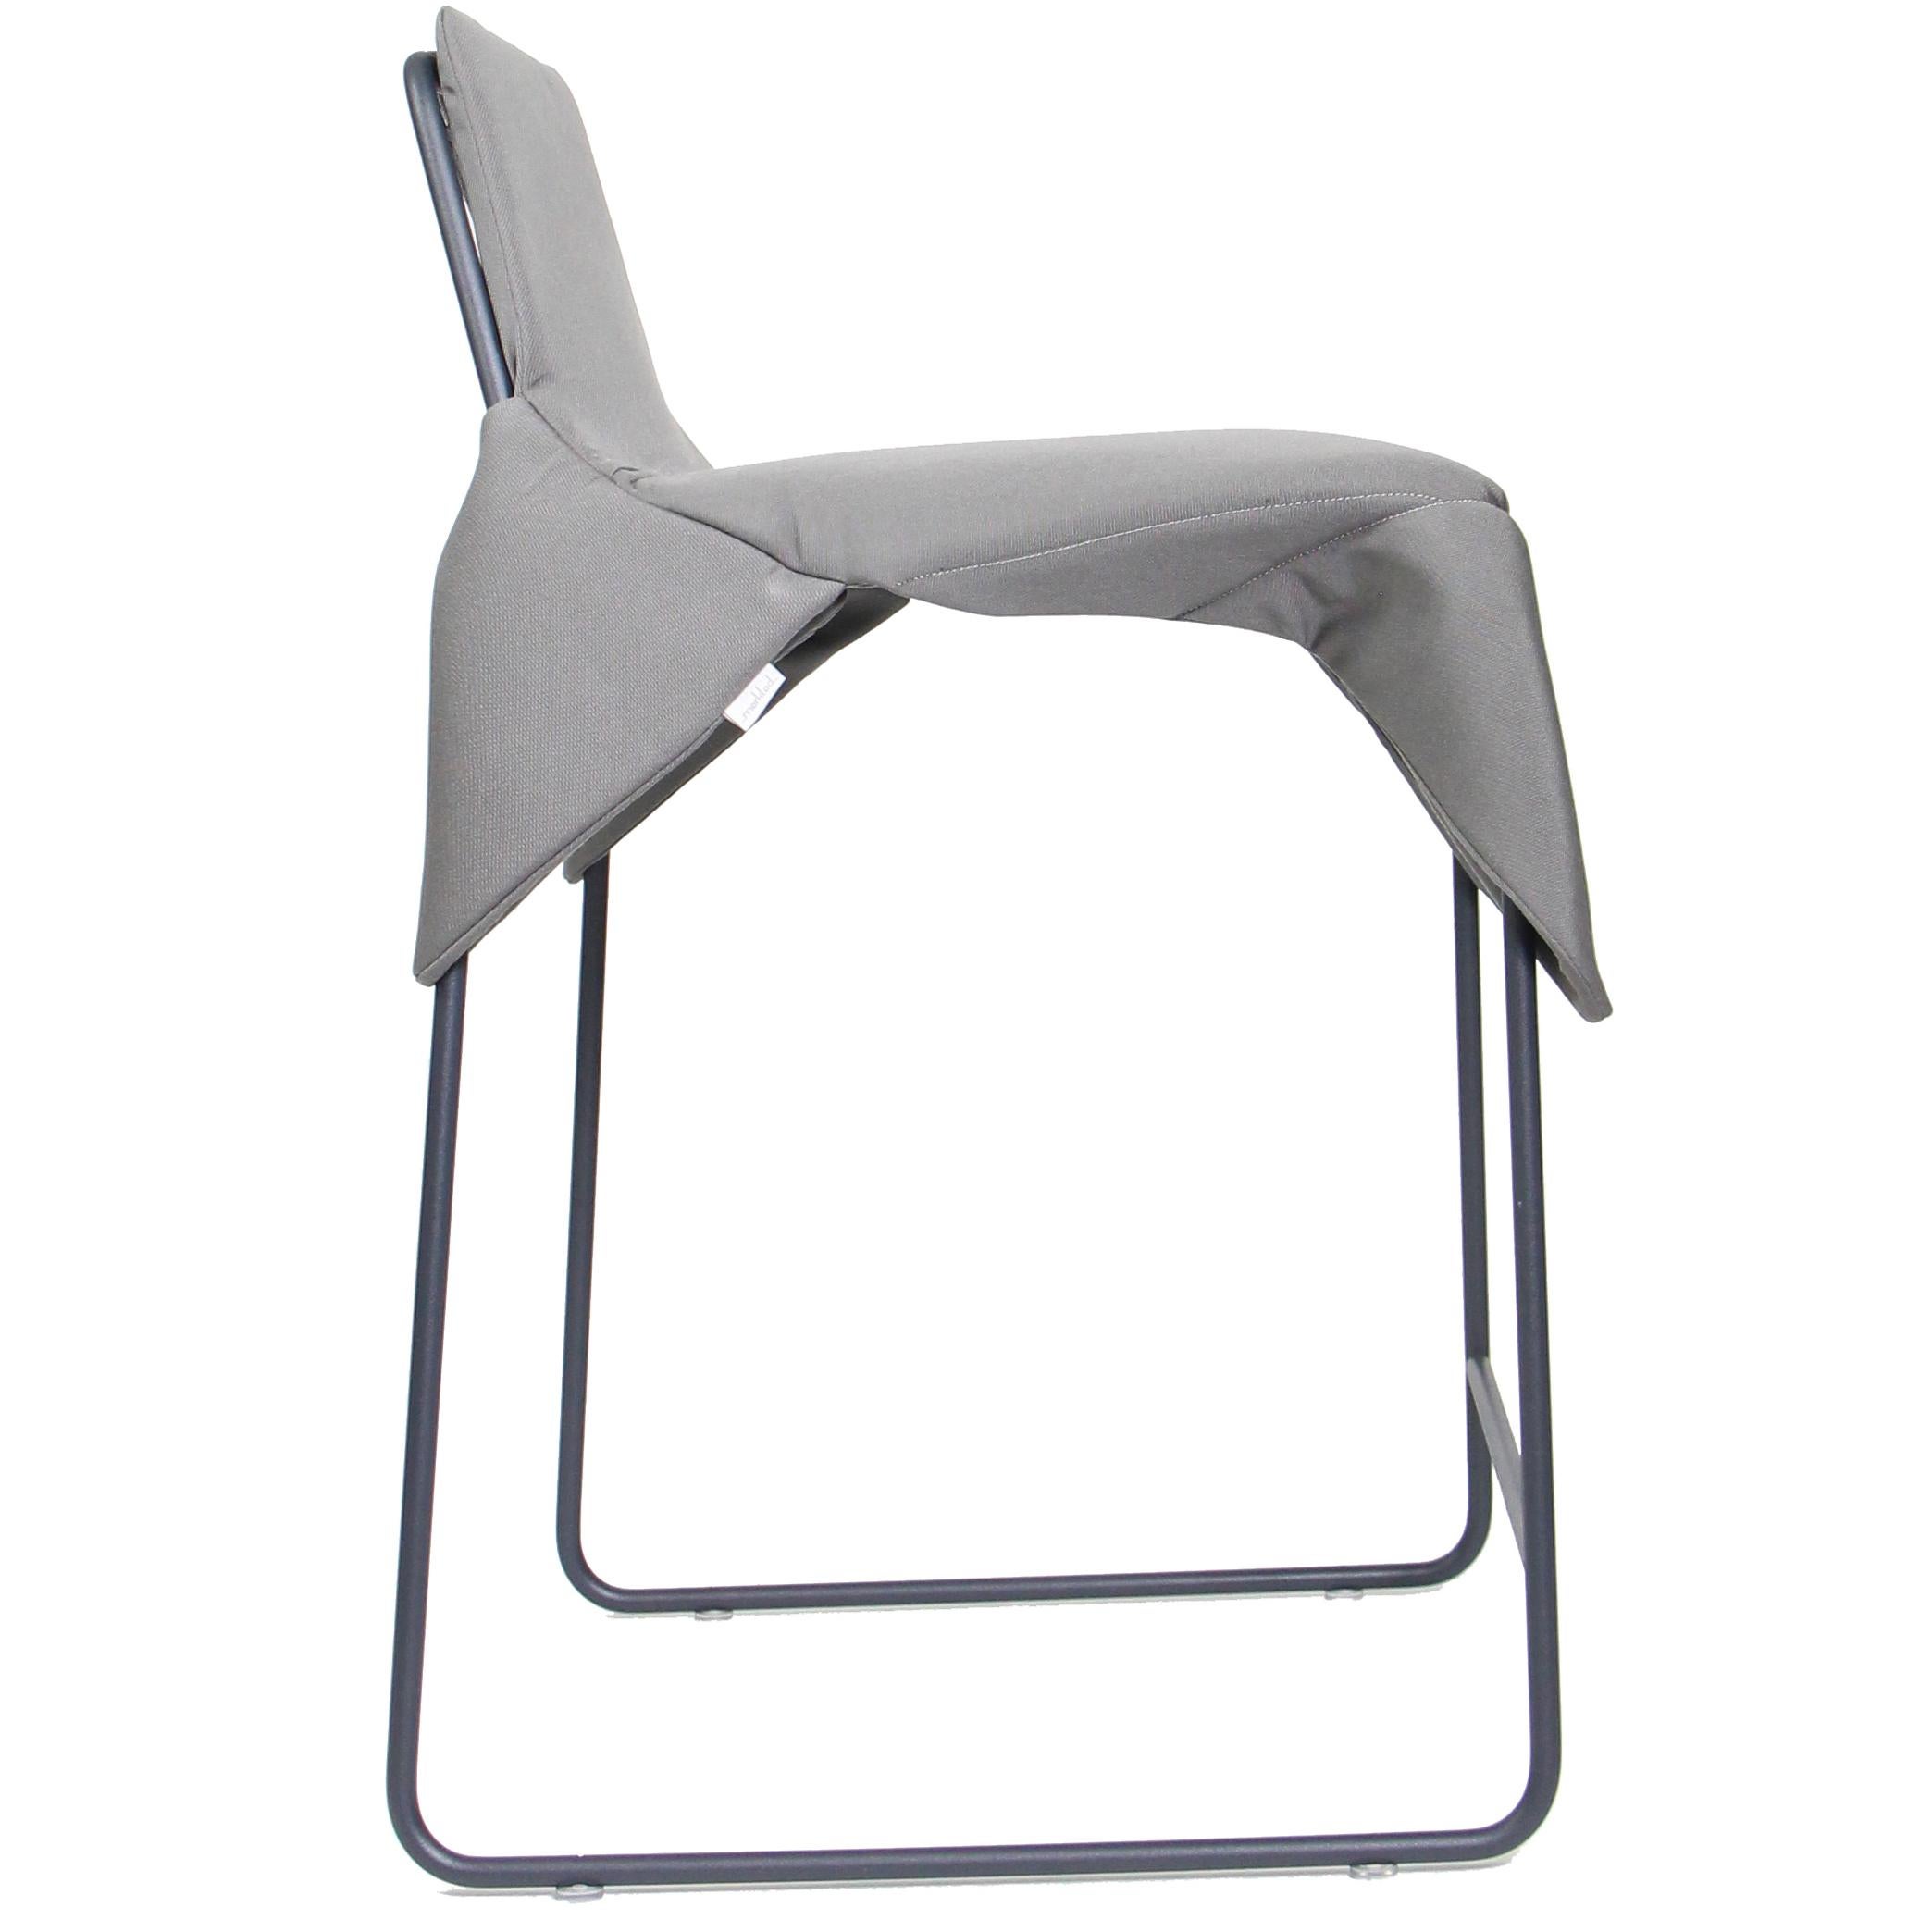 Der Merkled Net Wrap Chair besteht aus einem minimalistischen, geschweißten Stahlrahmen, der mit einer geknoteten Nylonschnur umwickelt ist, und einem gepolsterten, abnehmbaren Kissen aus strapazierfähigem Sunbrella-Gewebe für den Außenbereich, das